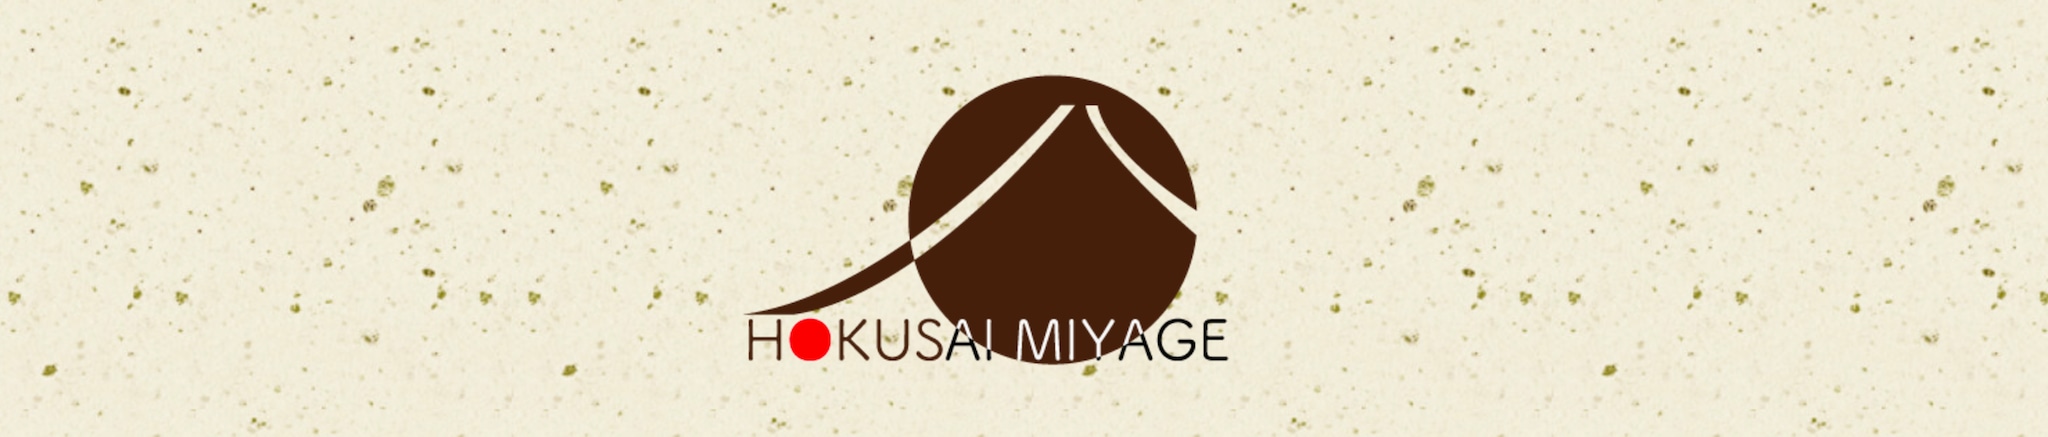 HOKUSAI-MIYAGE